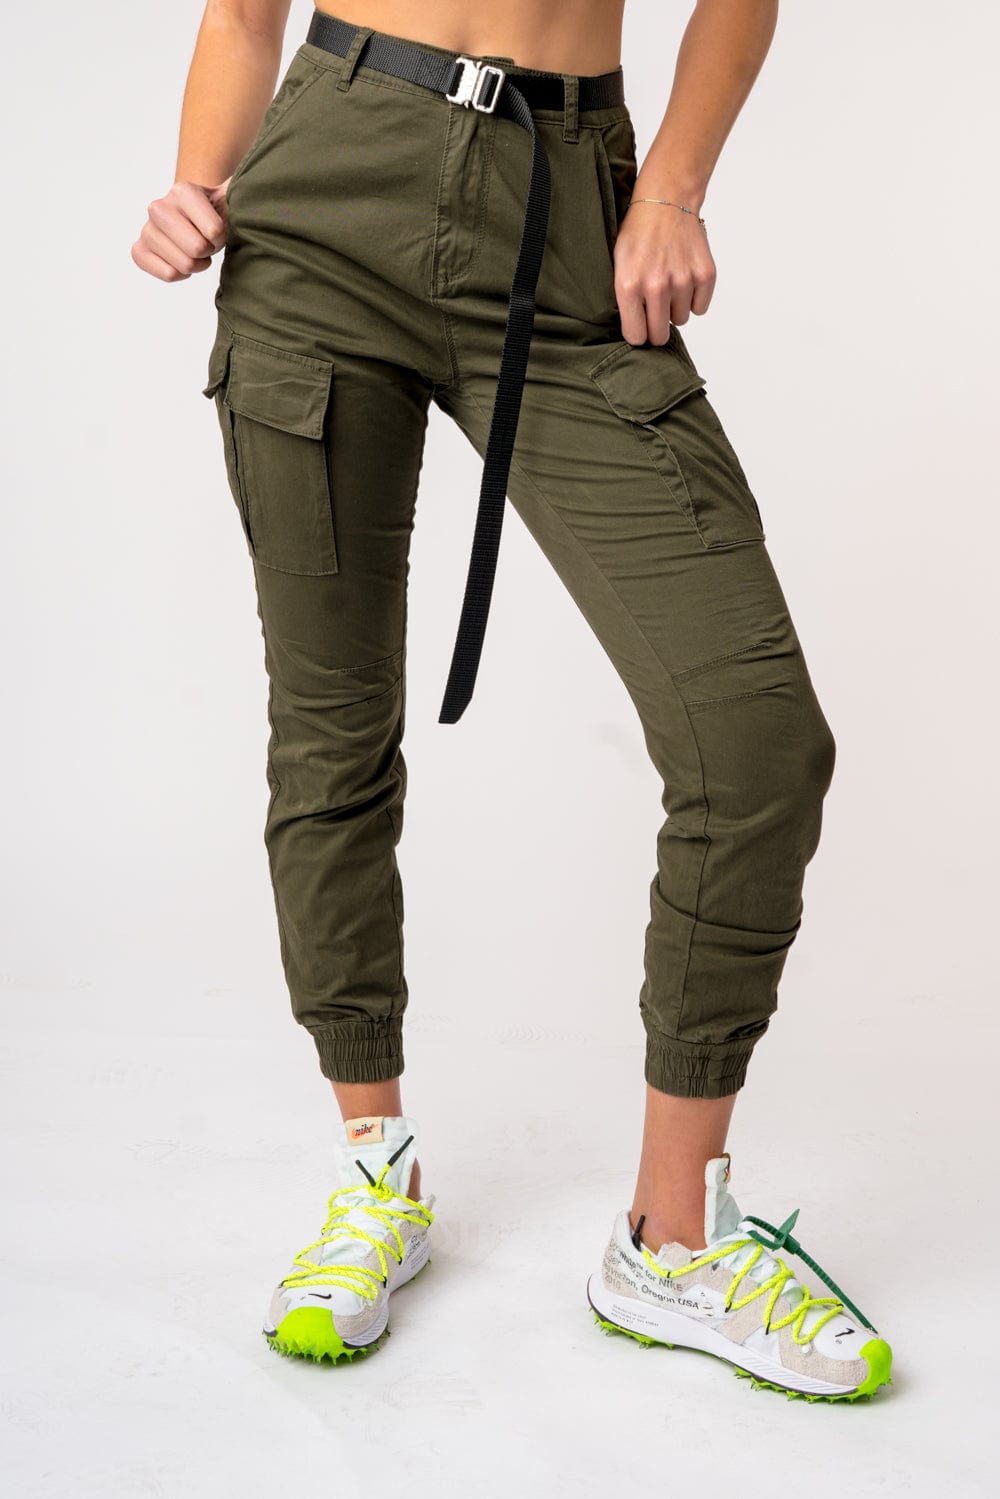 Women's slim cuffed joggers - KS Teamwear